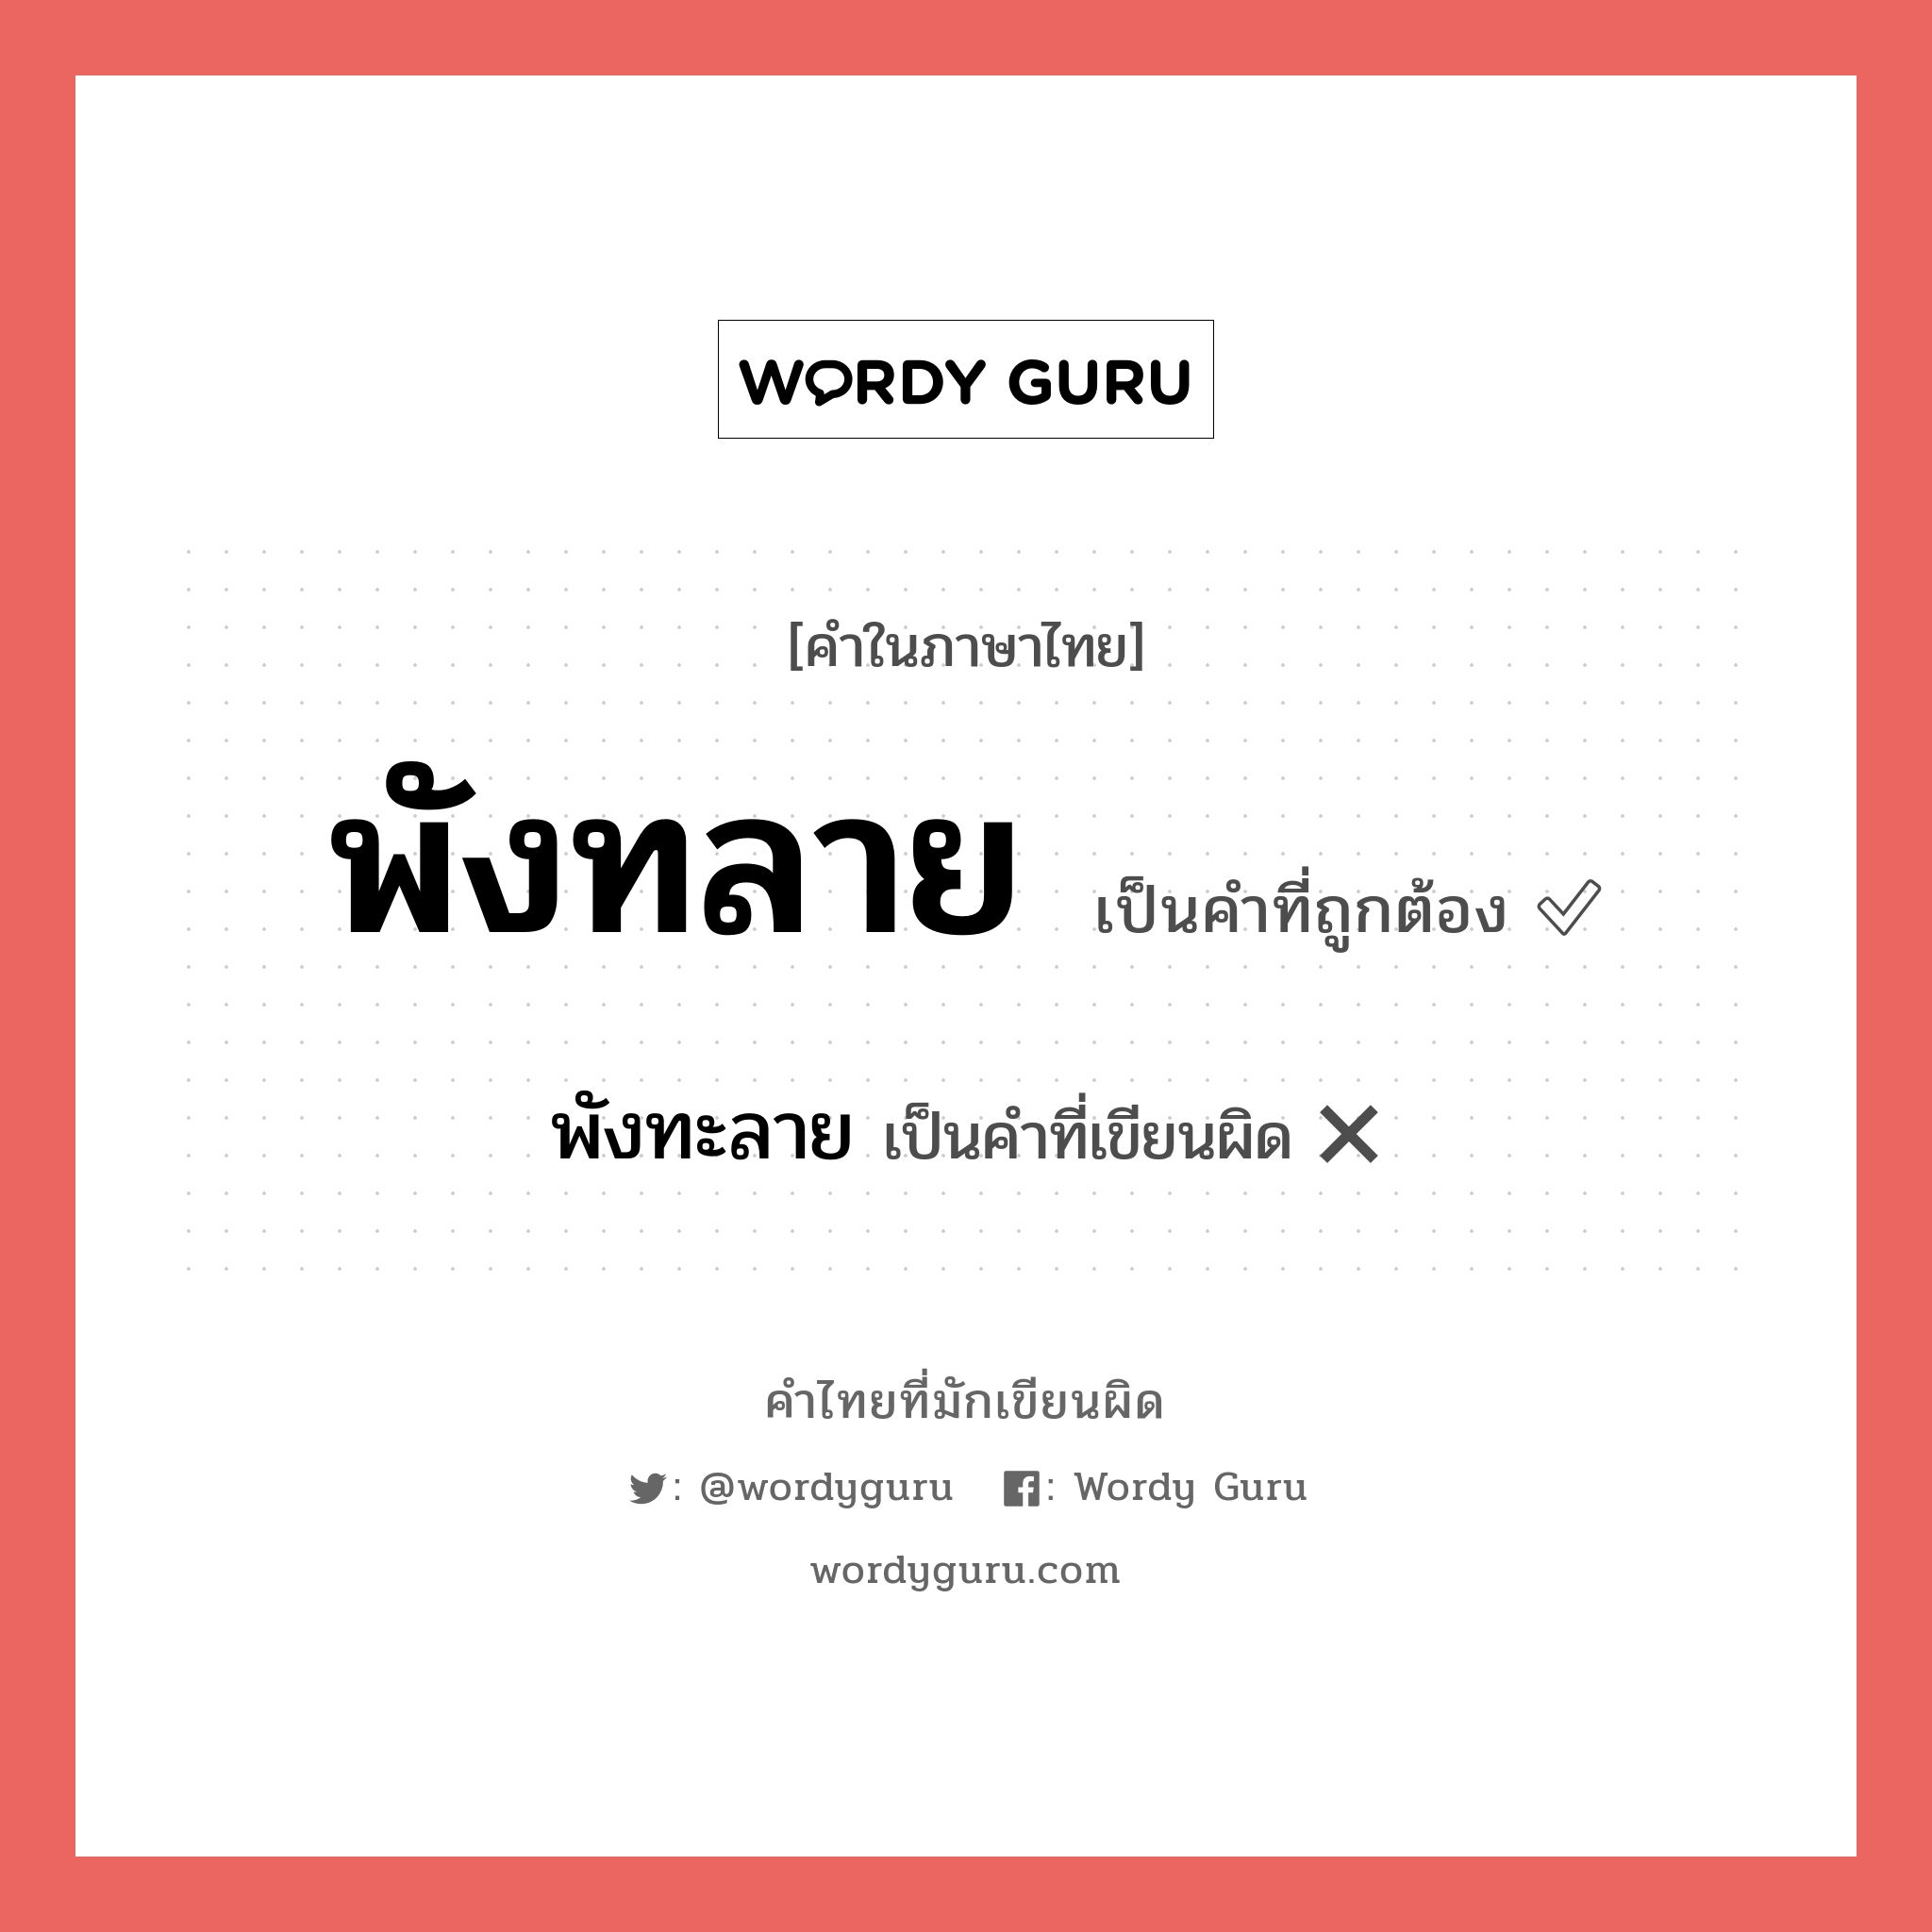 พังทะลาย หรือ พังทลาย คำไหนเขียนถูก?, คำในภาษาไทยที่มักเขียนผิด พังทะลาย คำที่ผิด ❌ พังทลาย